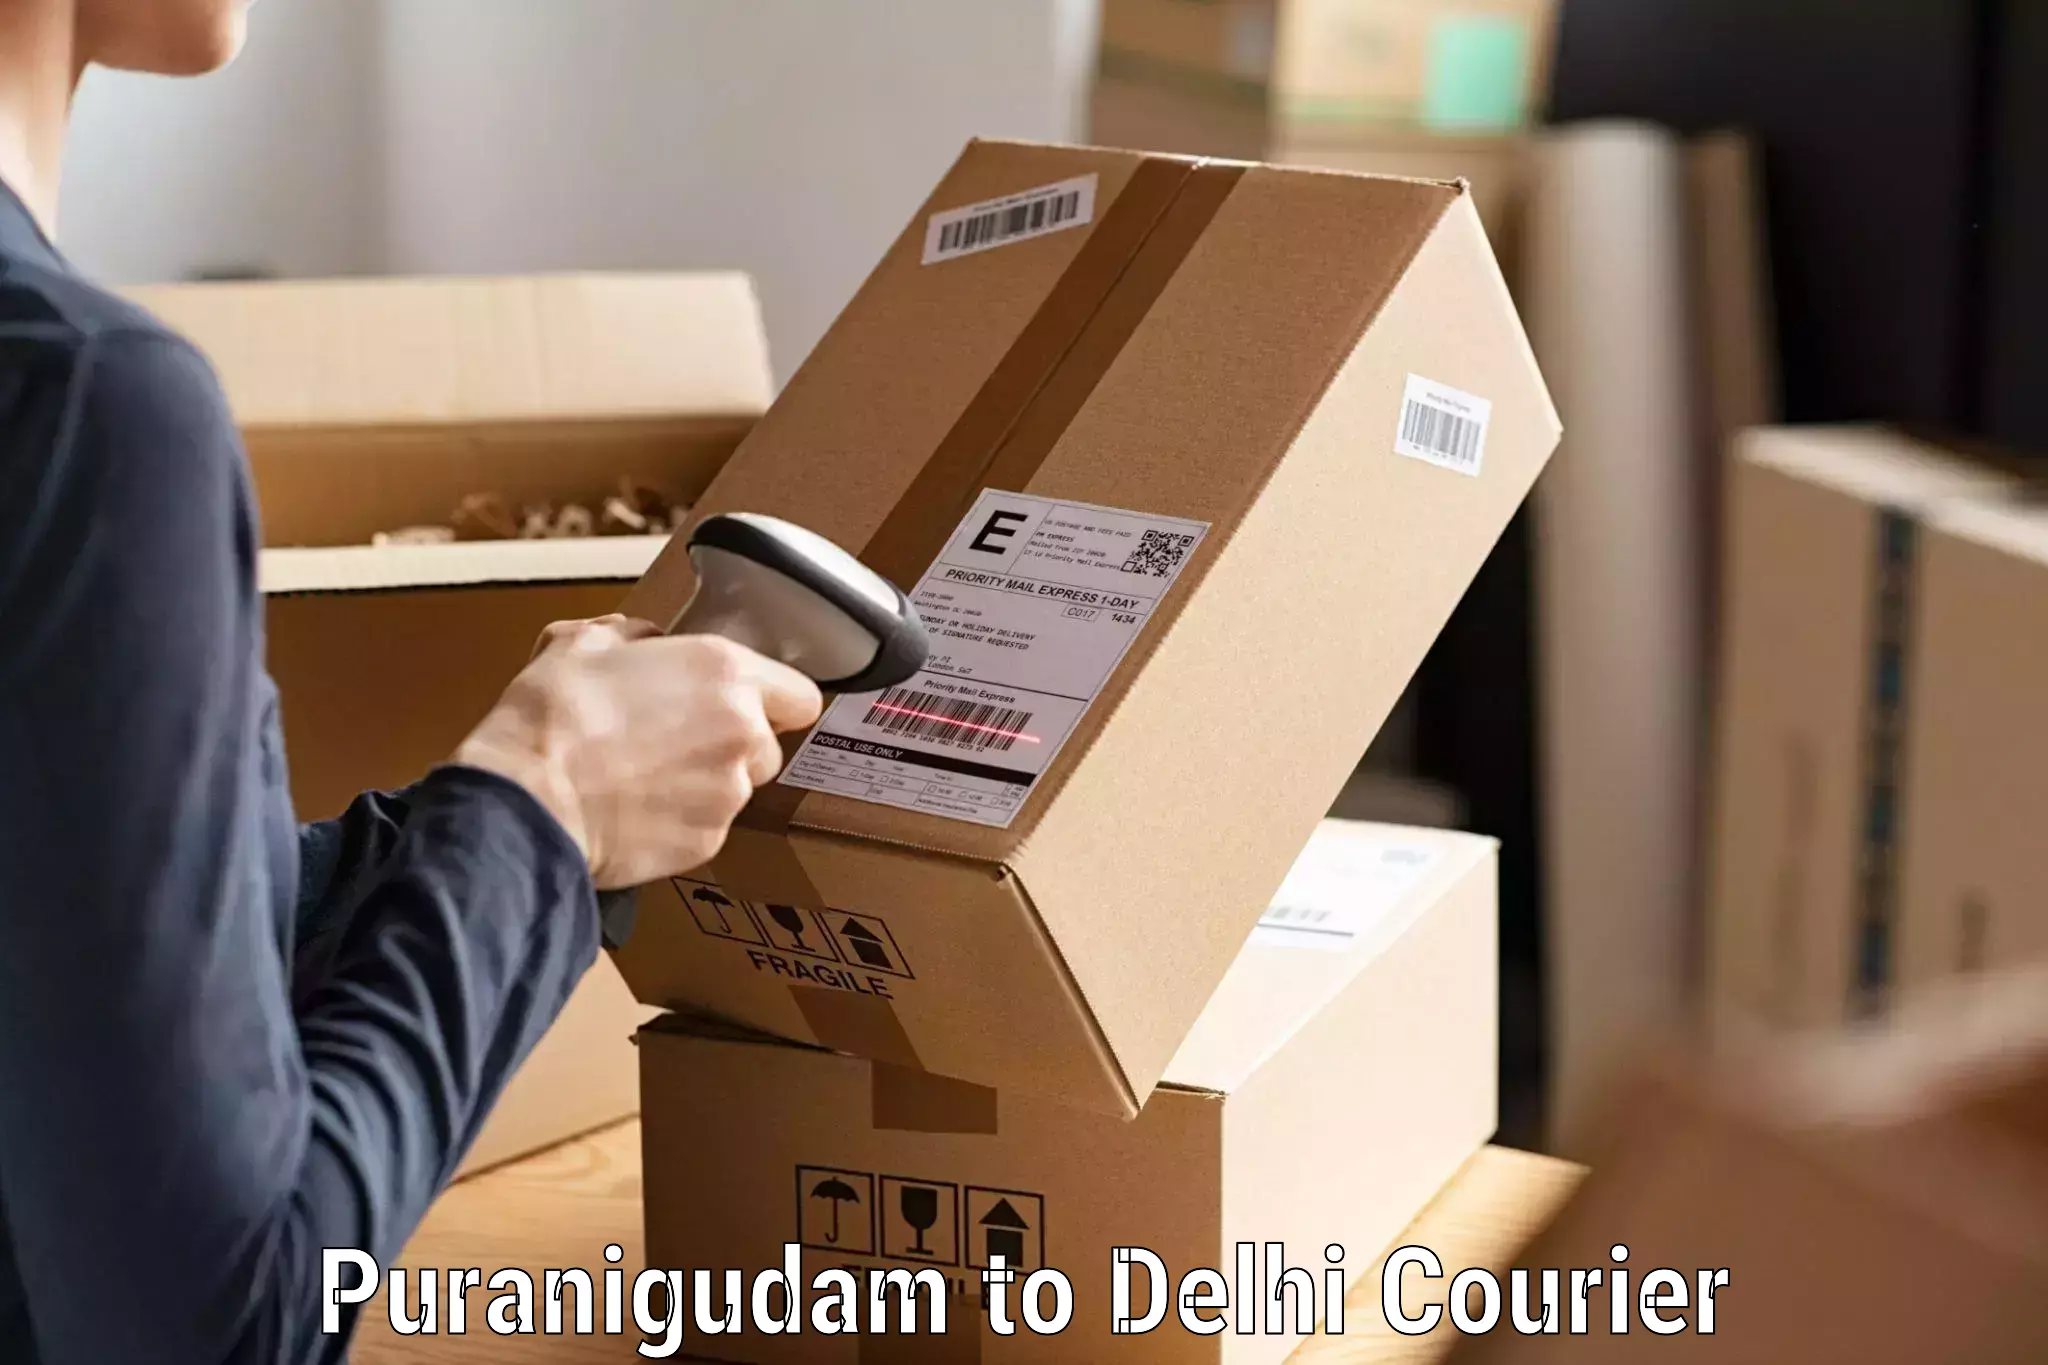 Premium courier services Puranigudam to University of Delhi